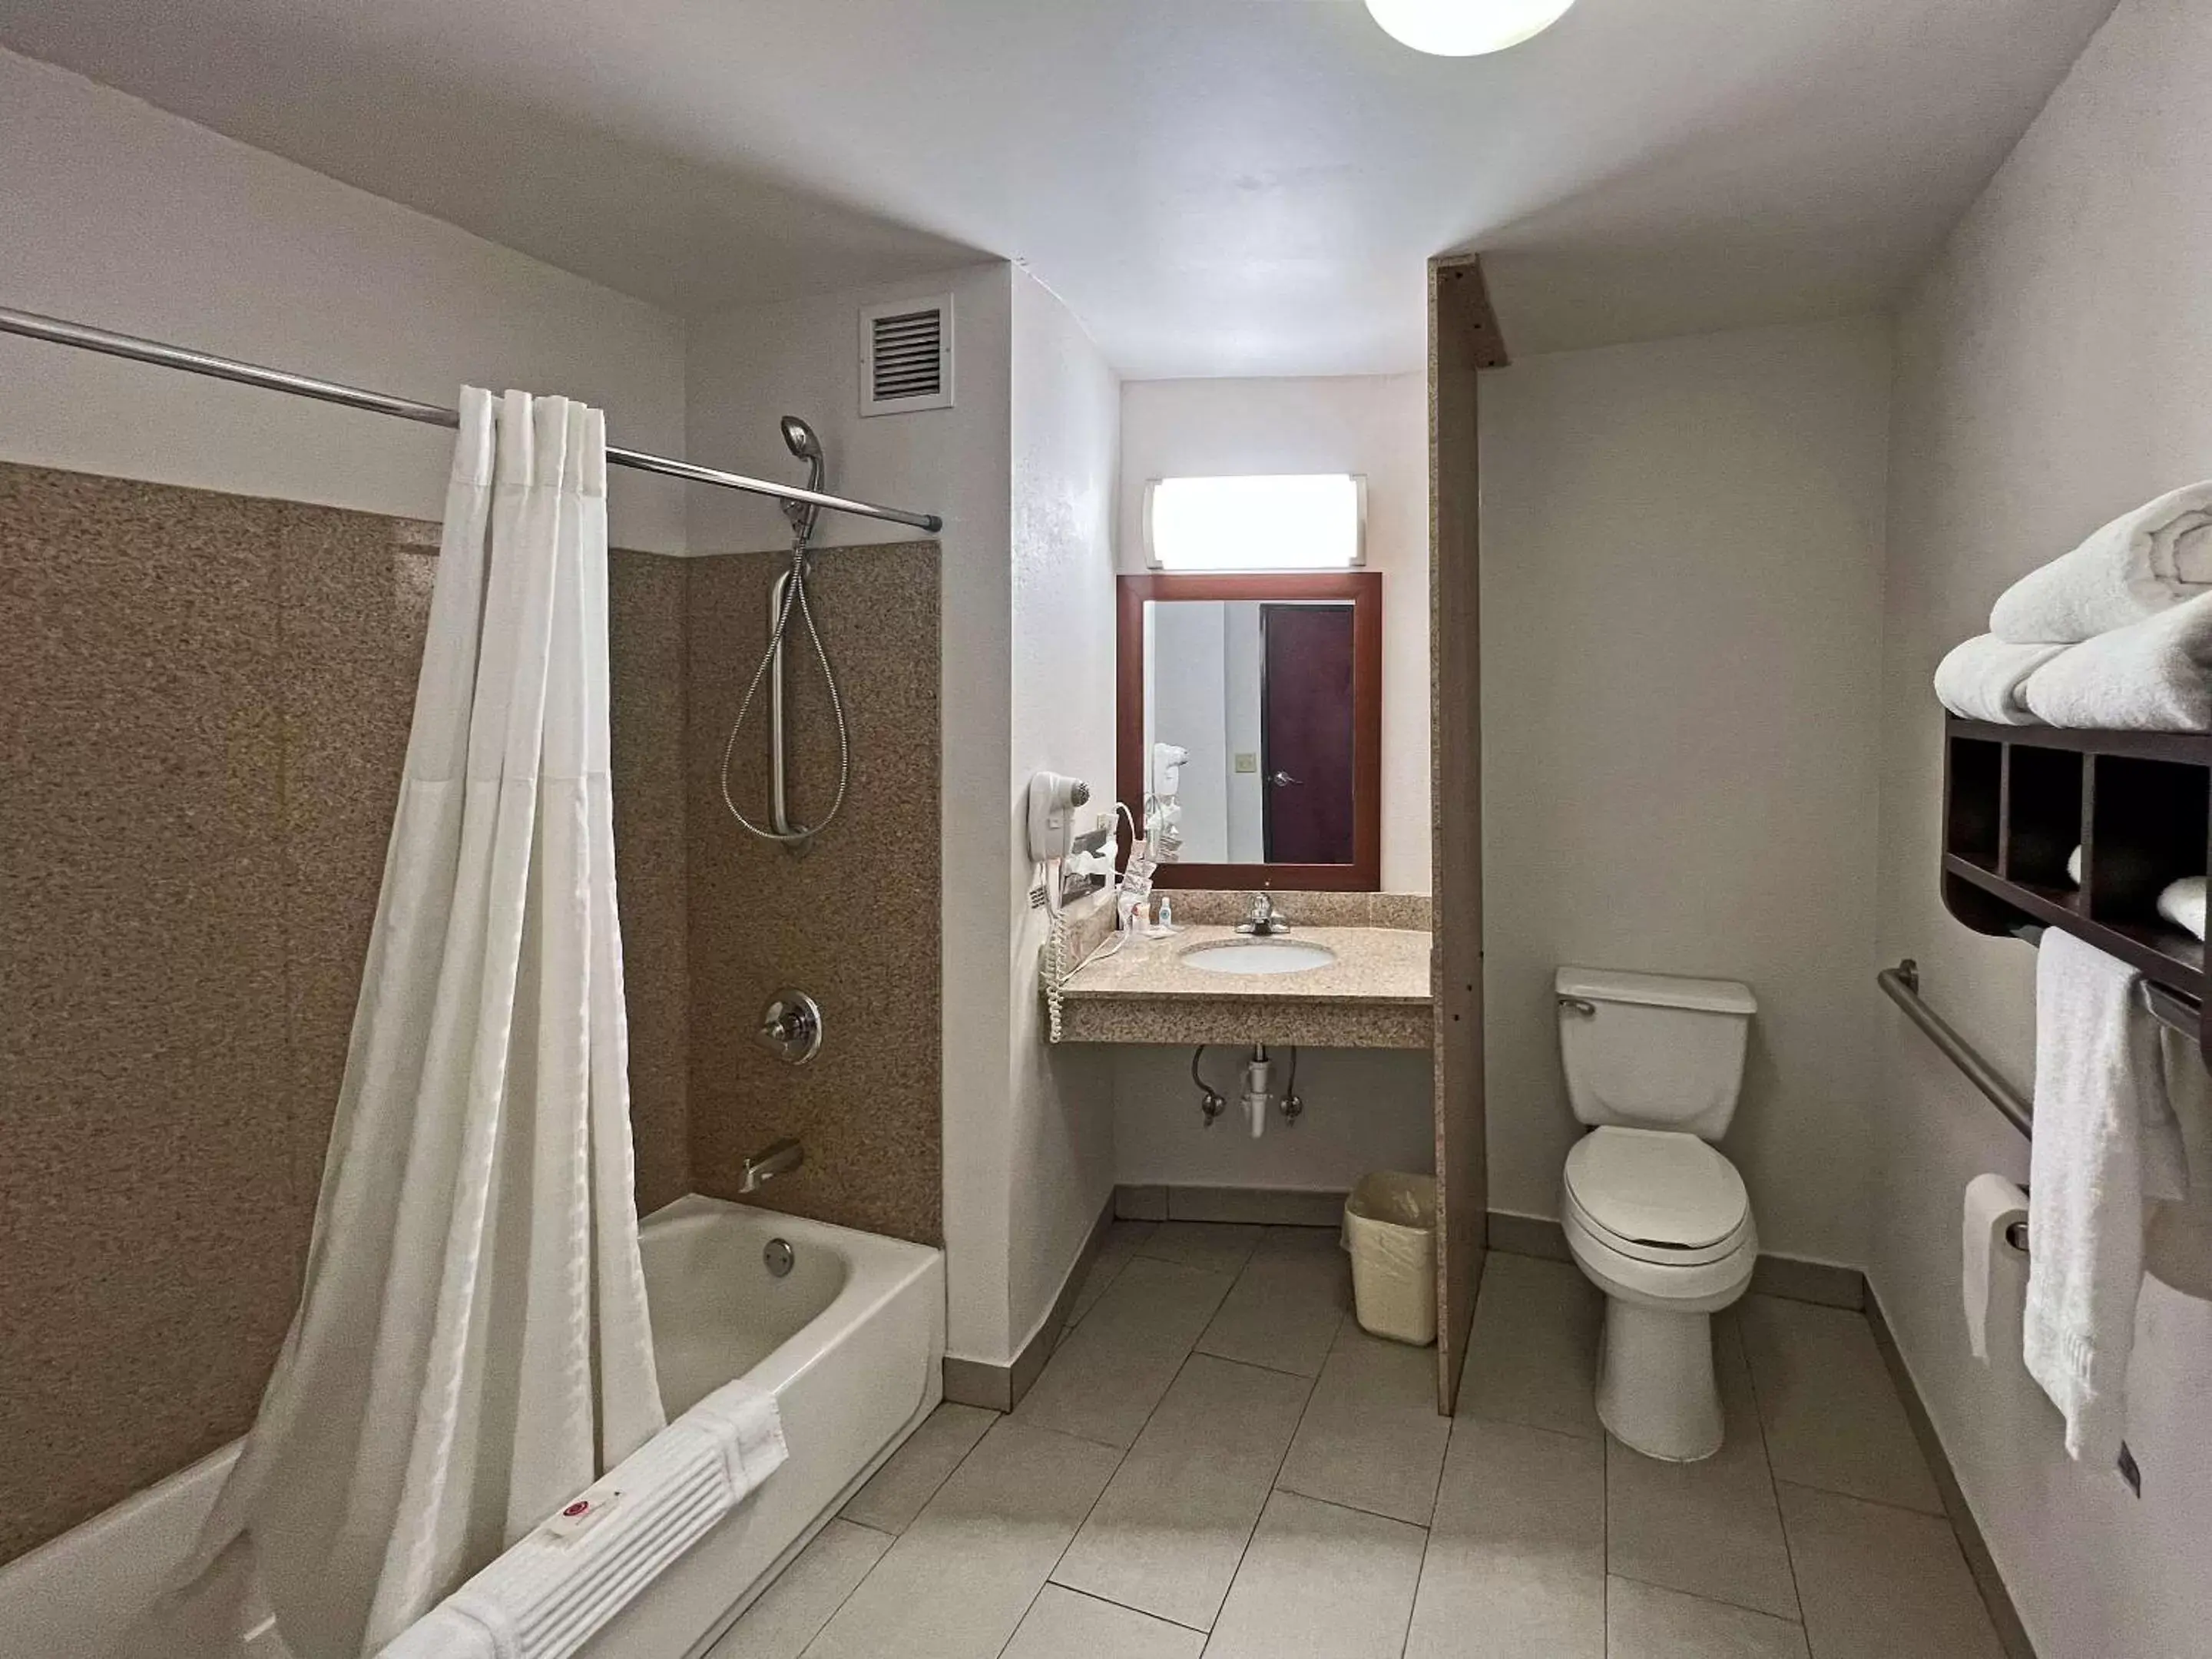 Bedroom, Bathroom in Comfort Suites Jackson - Cape Girardeau